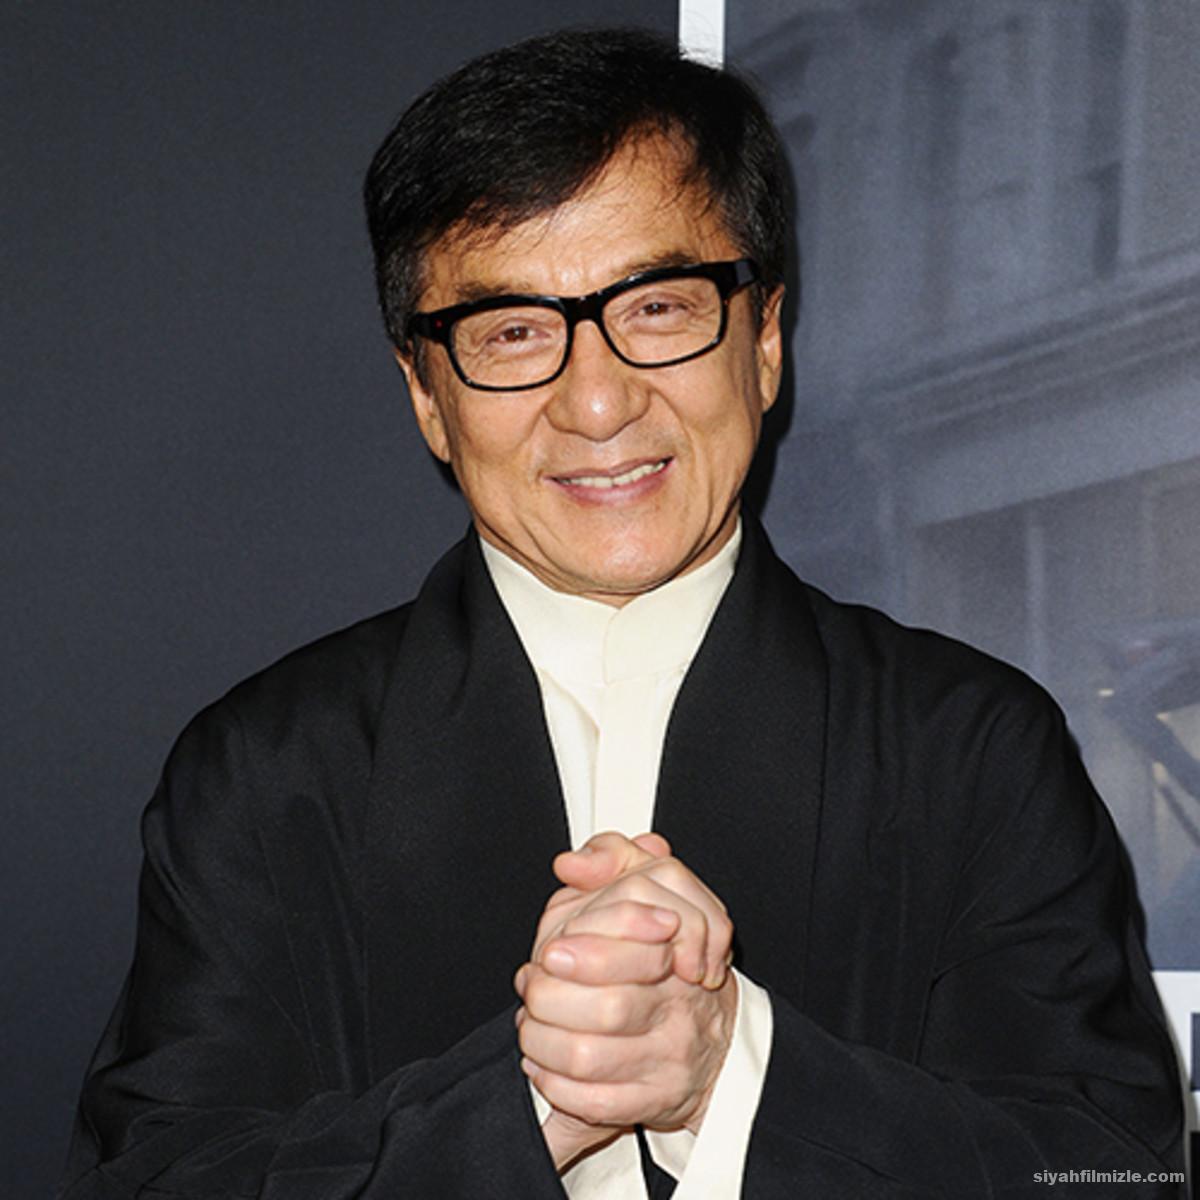 Jackie Chan Filmleri